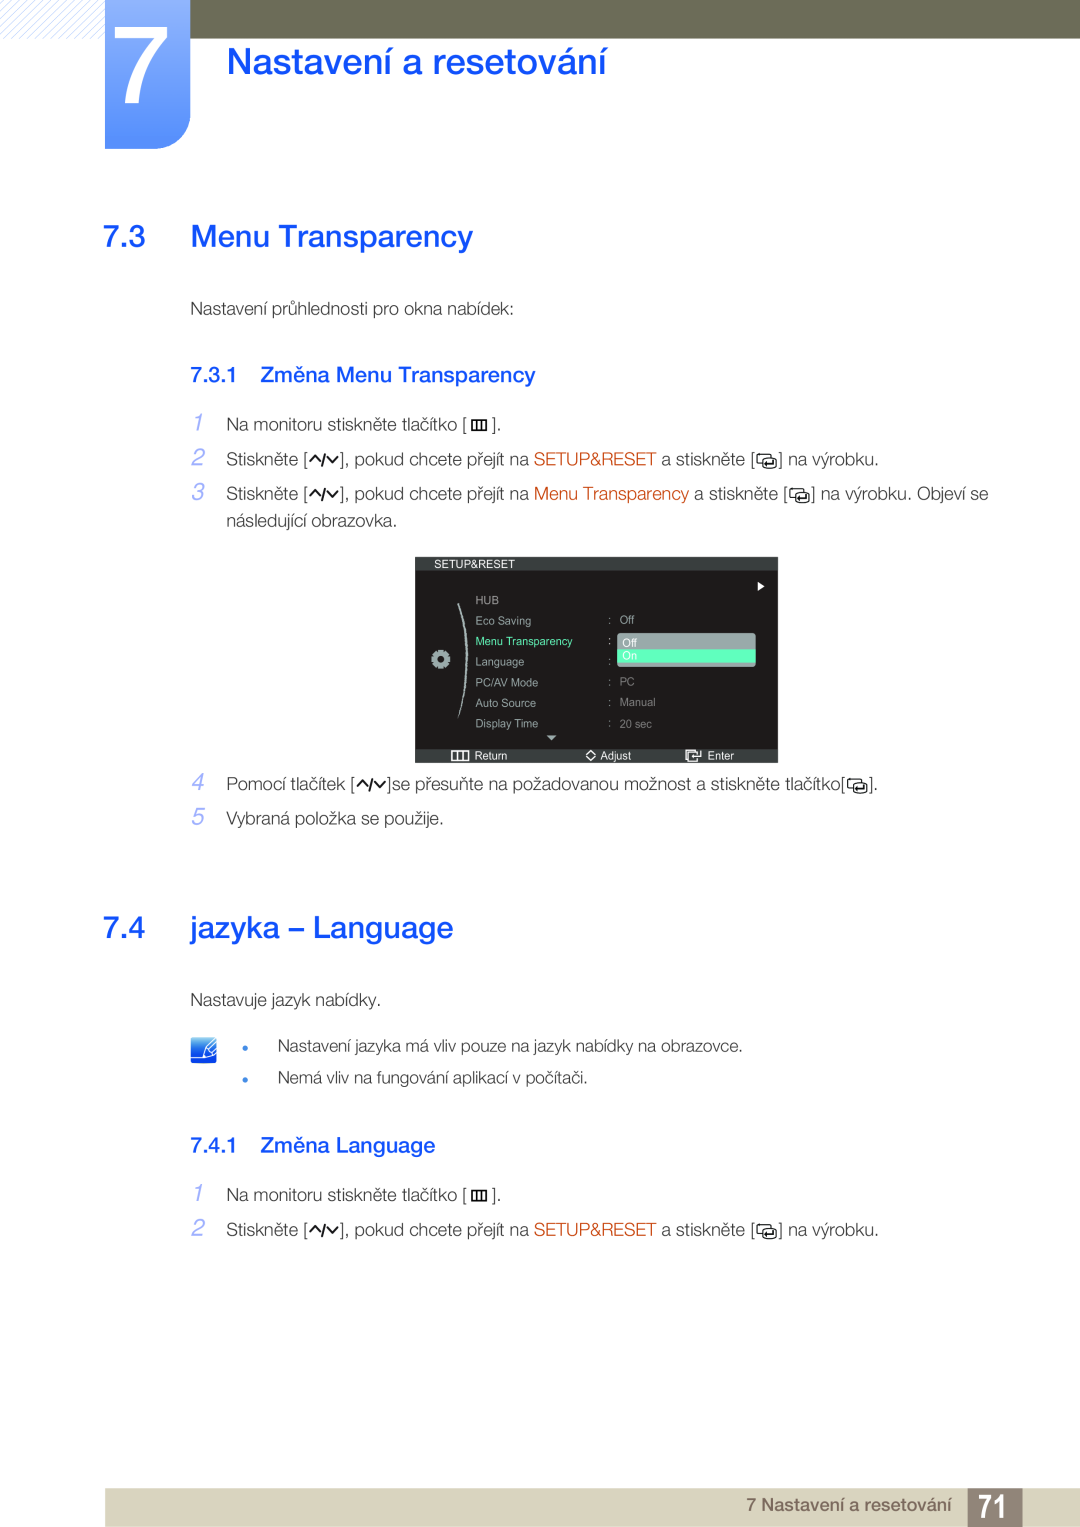 Samsung LC27A750XS/EN jazyka - Language, 7.3.1 Změna Menu Transparency, 7.4.1 Změna Language, Nastavení a resetování 